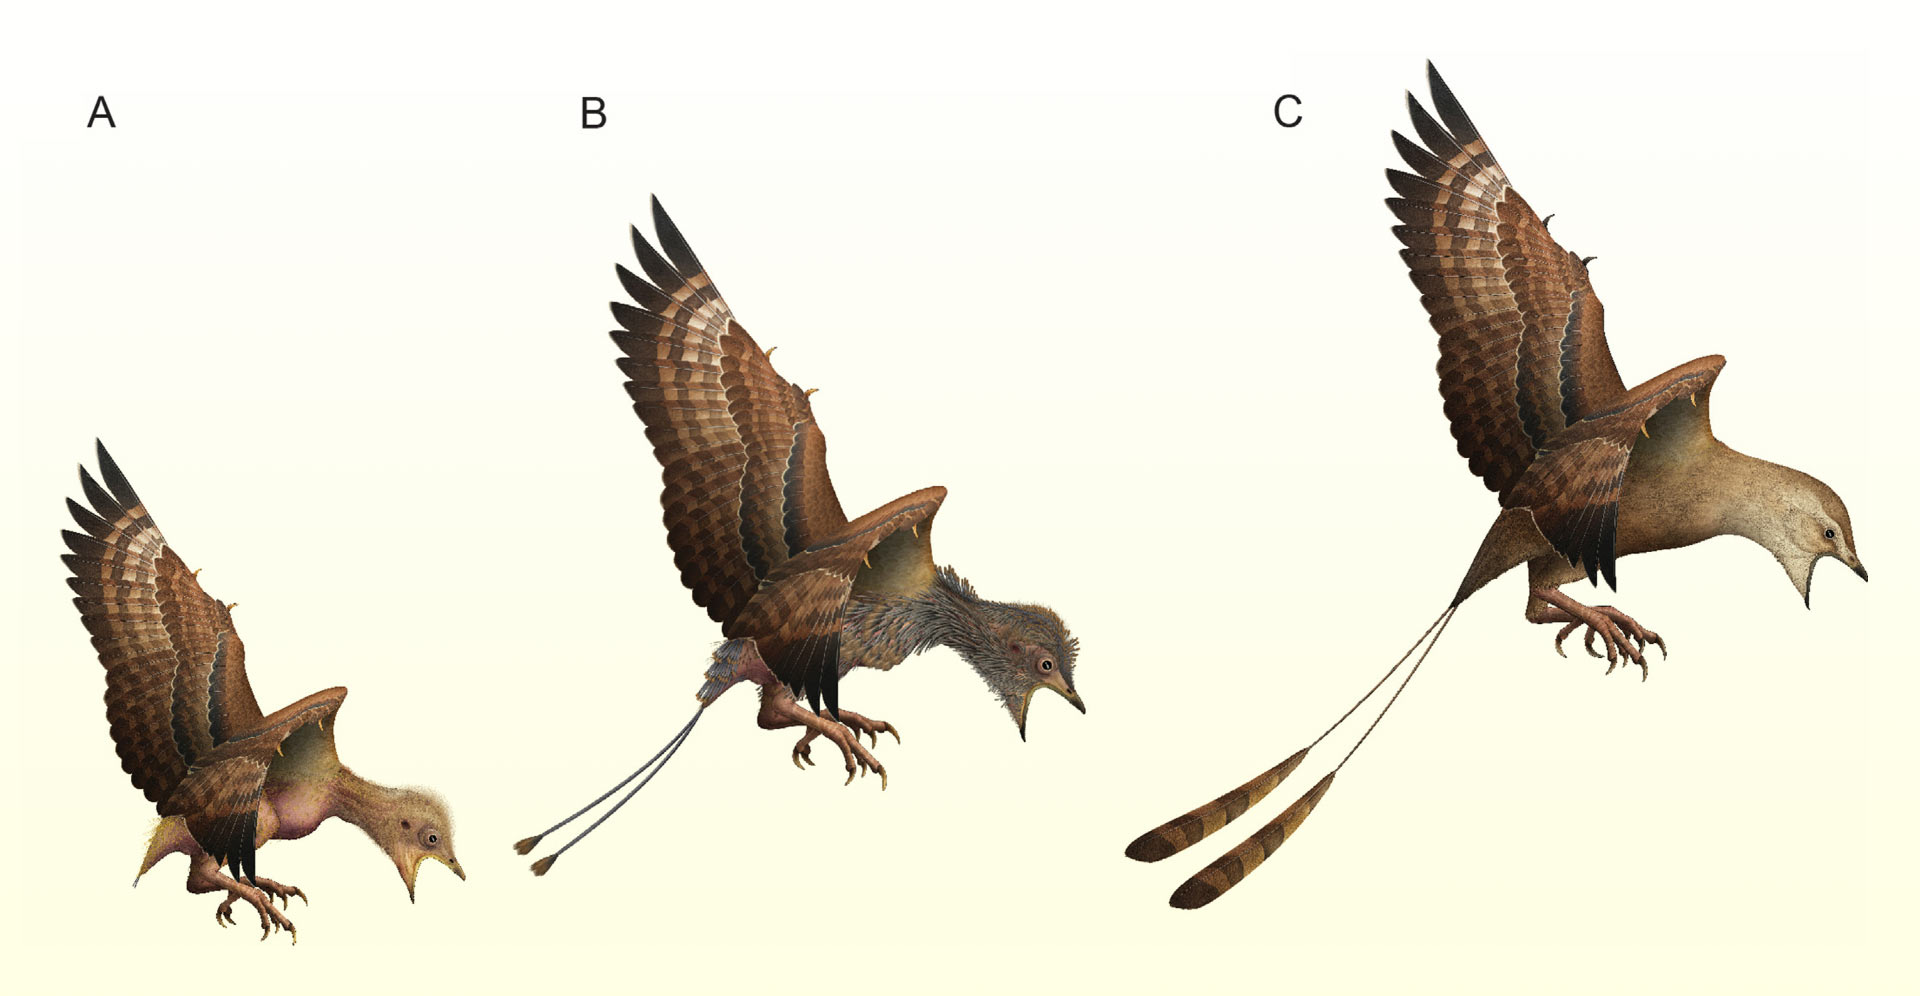 Cycle de mue hypothétique chez les oiseaux énantiornithines juvéniles : (A) oiseau nouveau-né avec un plumage natal clairsemé ; (B) mue rapide; (C) juvénile avec un plumage juvénile comprenant des plumes dominées par le rachis pleinement développé.